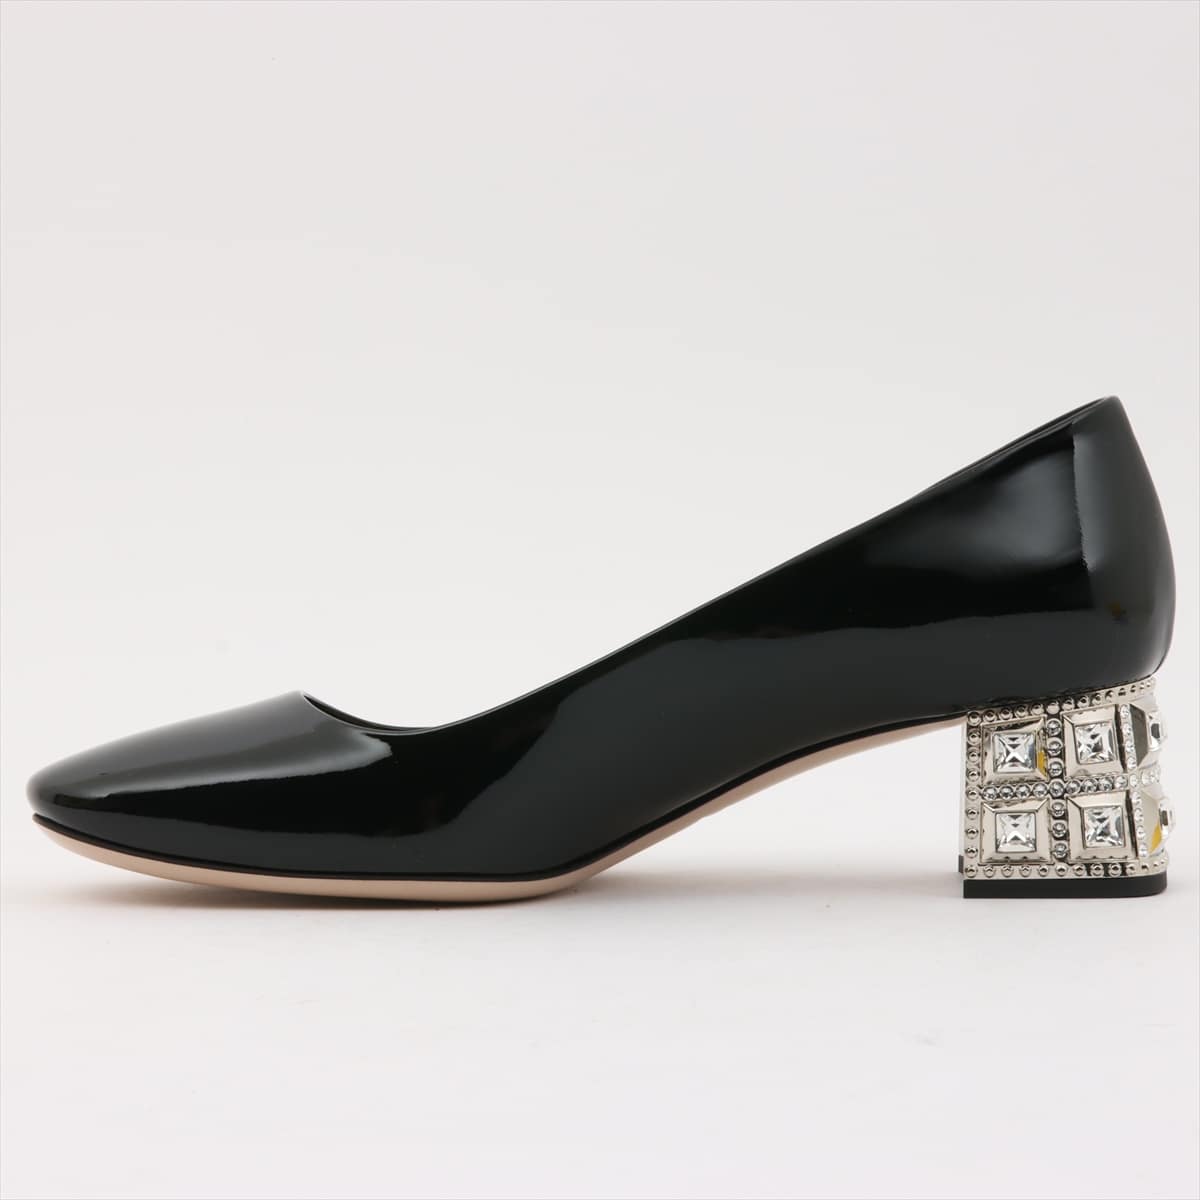 Miu Miu Patent leather Pumps 36 1/2 Ladies' Black Bijou heel